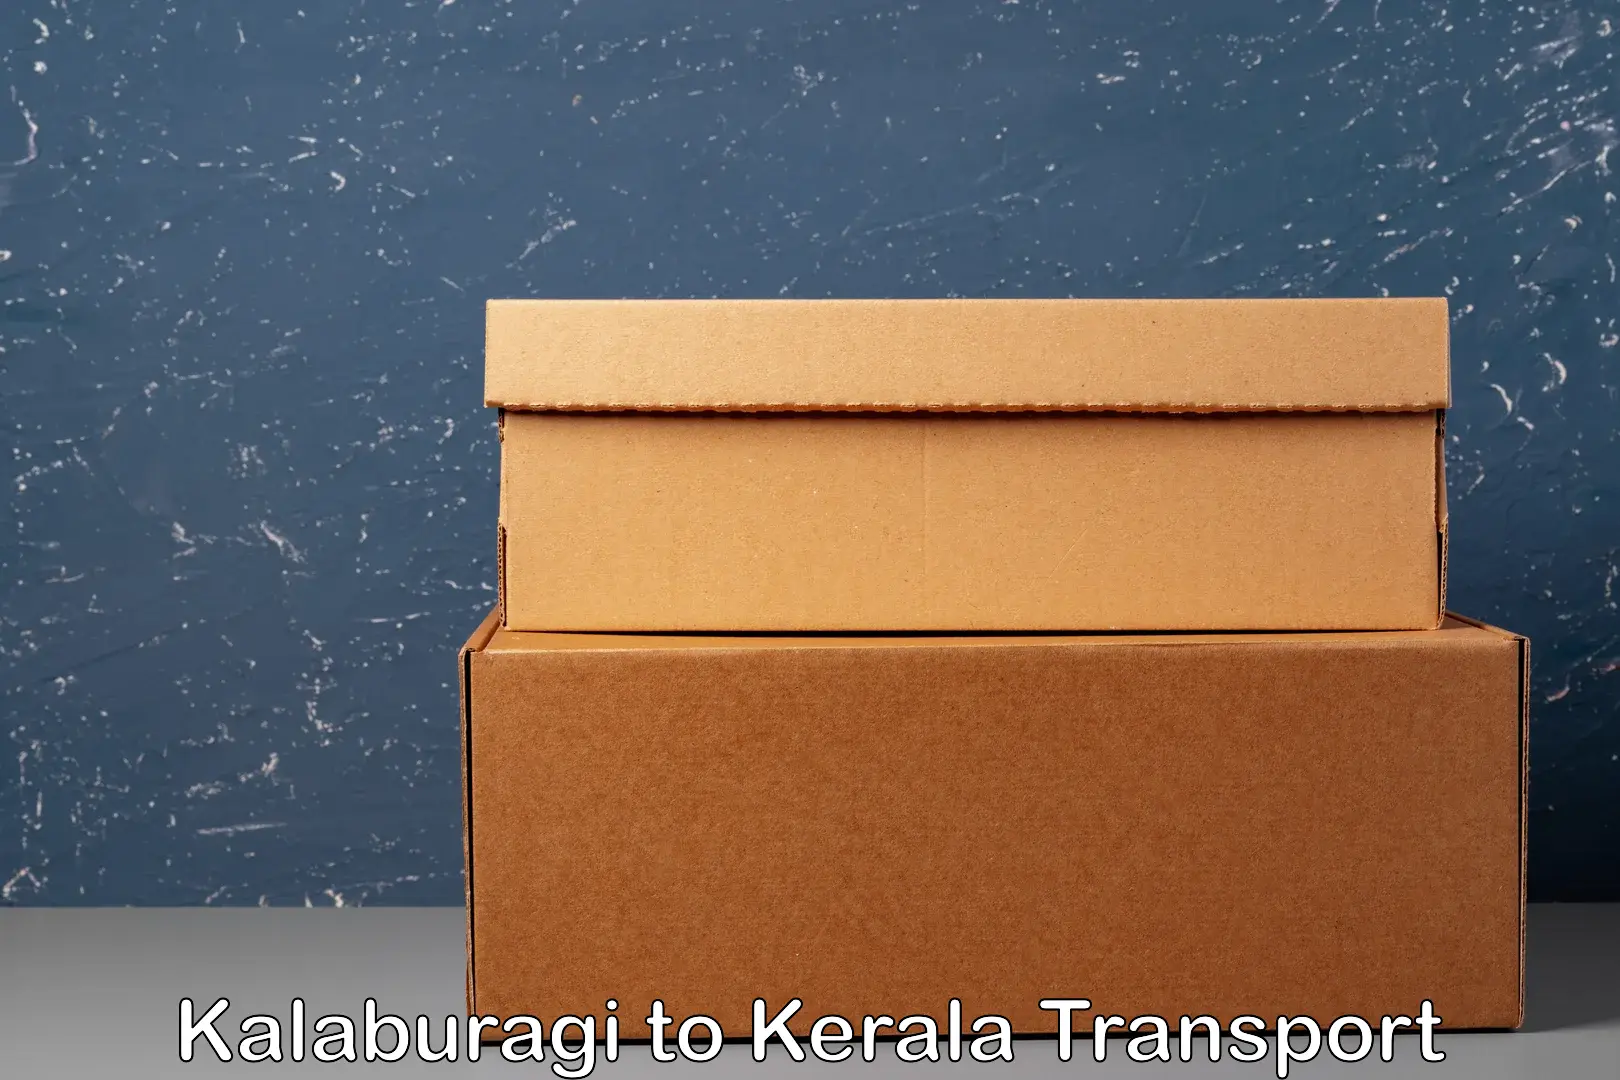 Online transport booking in Kalaburagi to Perambra